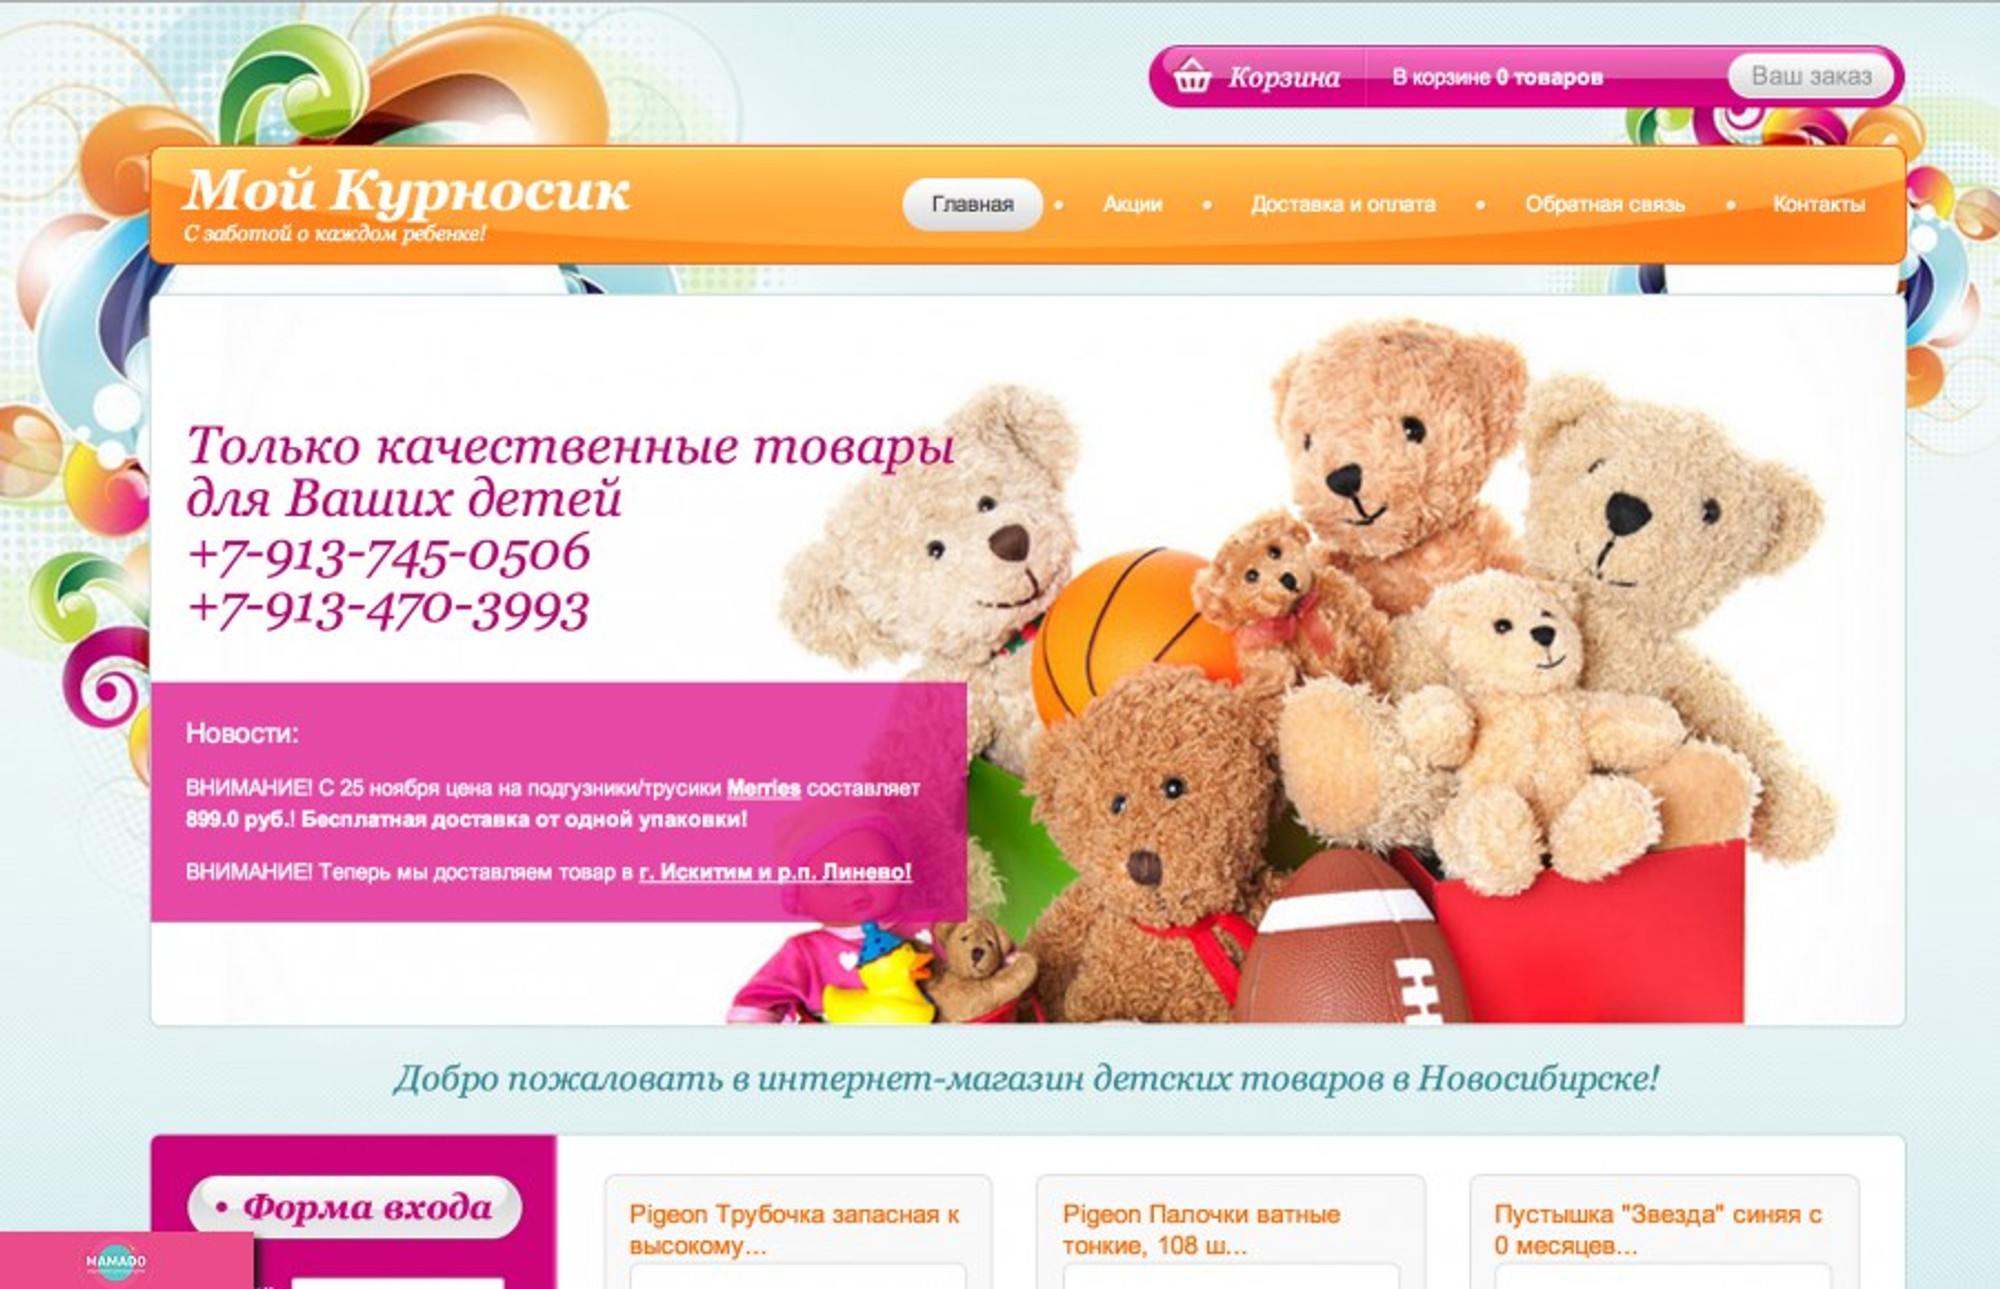 "Мой курносик", интернет-магазин японских подгузников и товаров, Новосибирск 